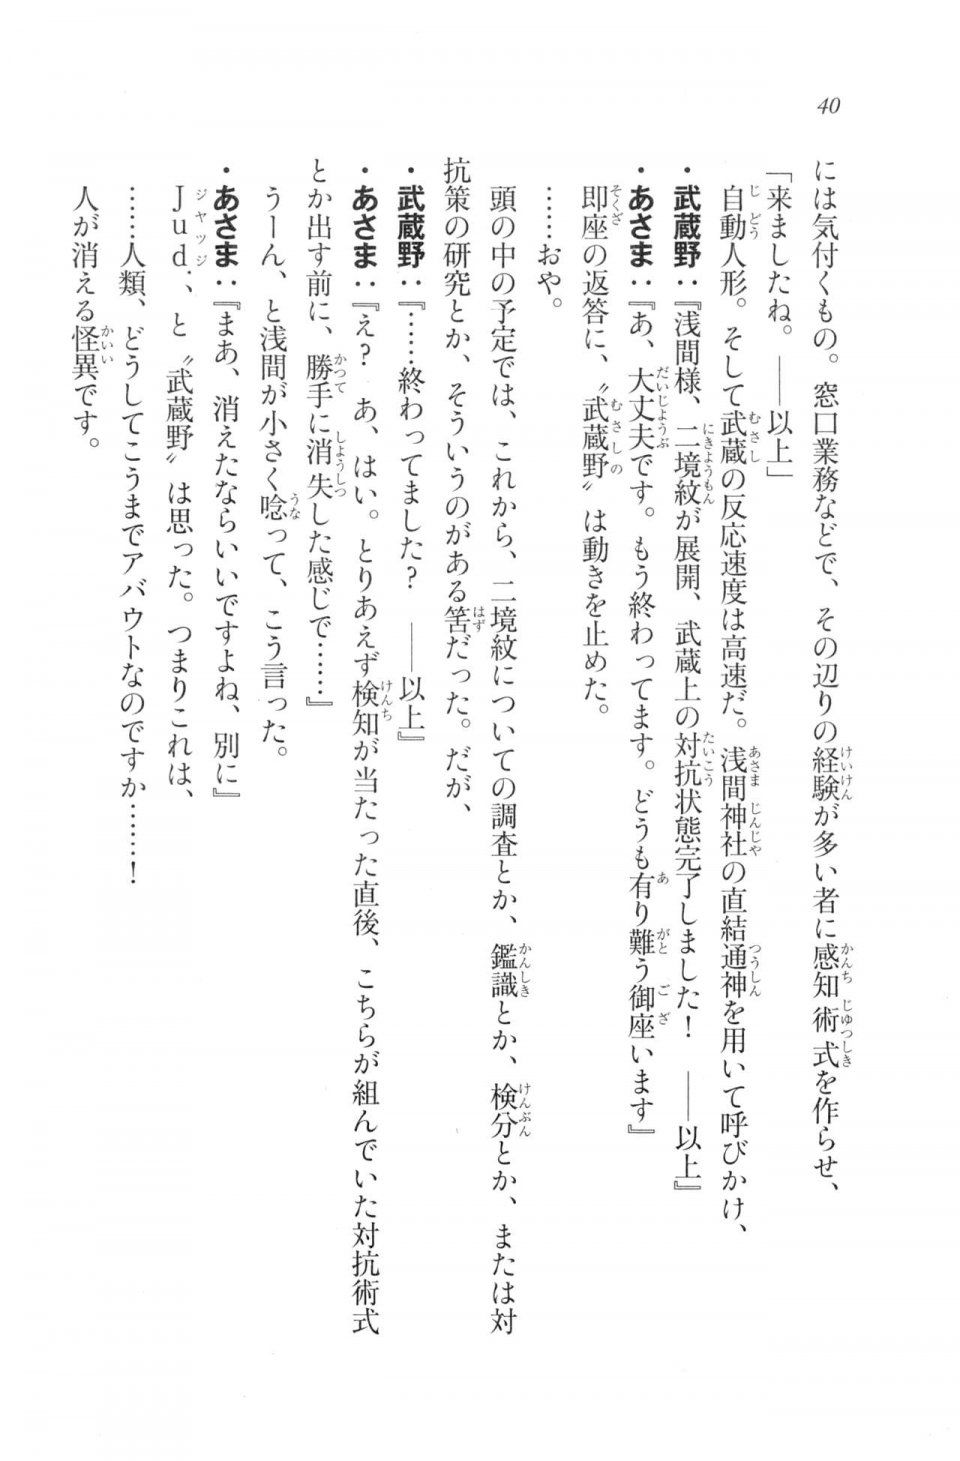 Kyoukai Senjou no Horizon LN Vol 20(8B) - Photo #40